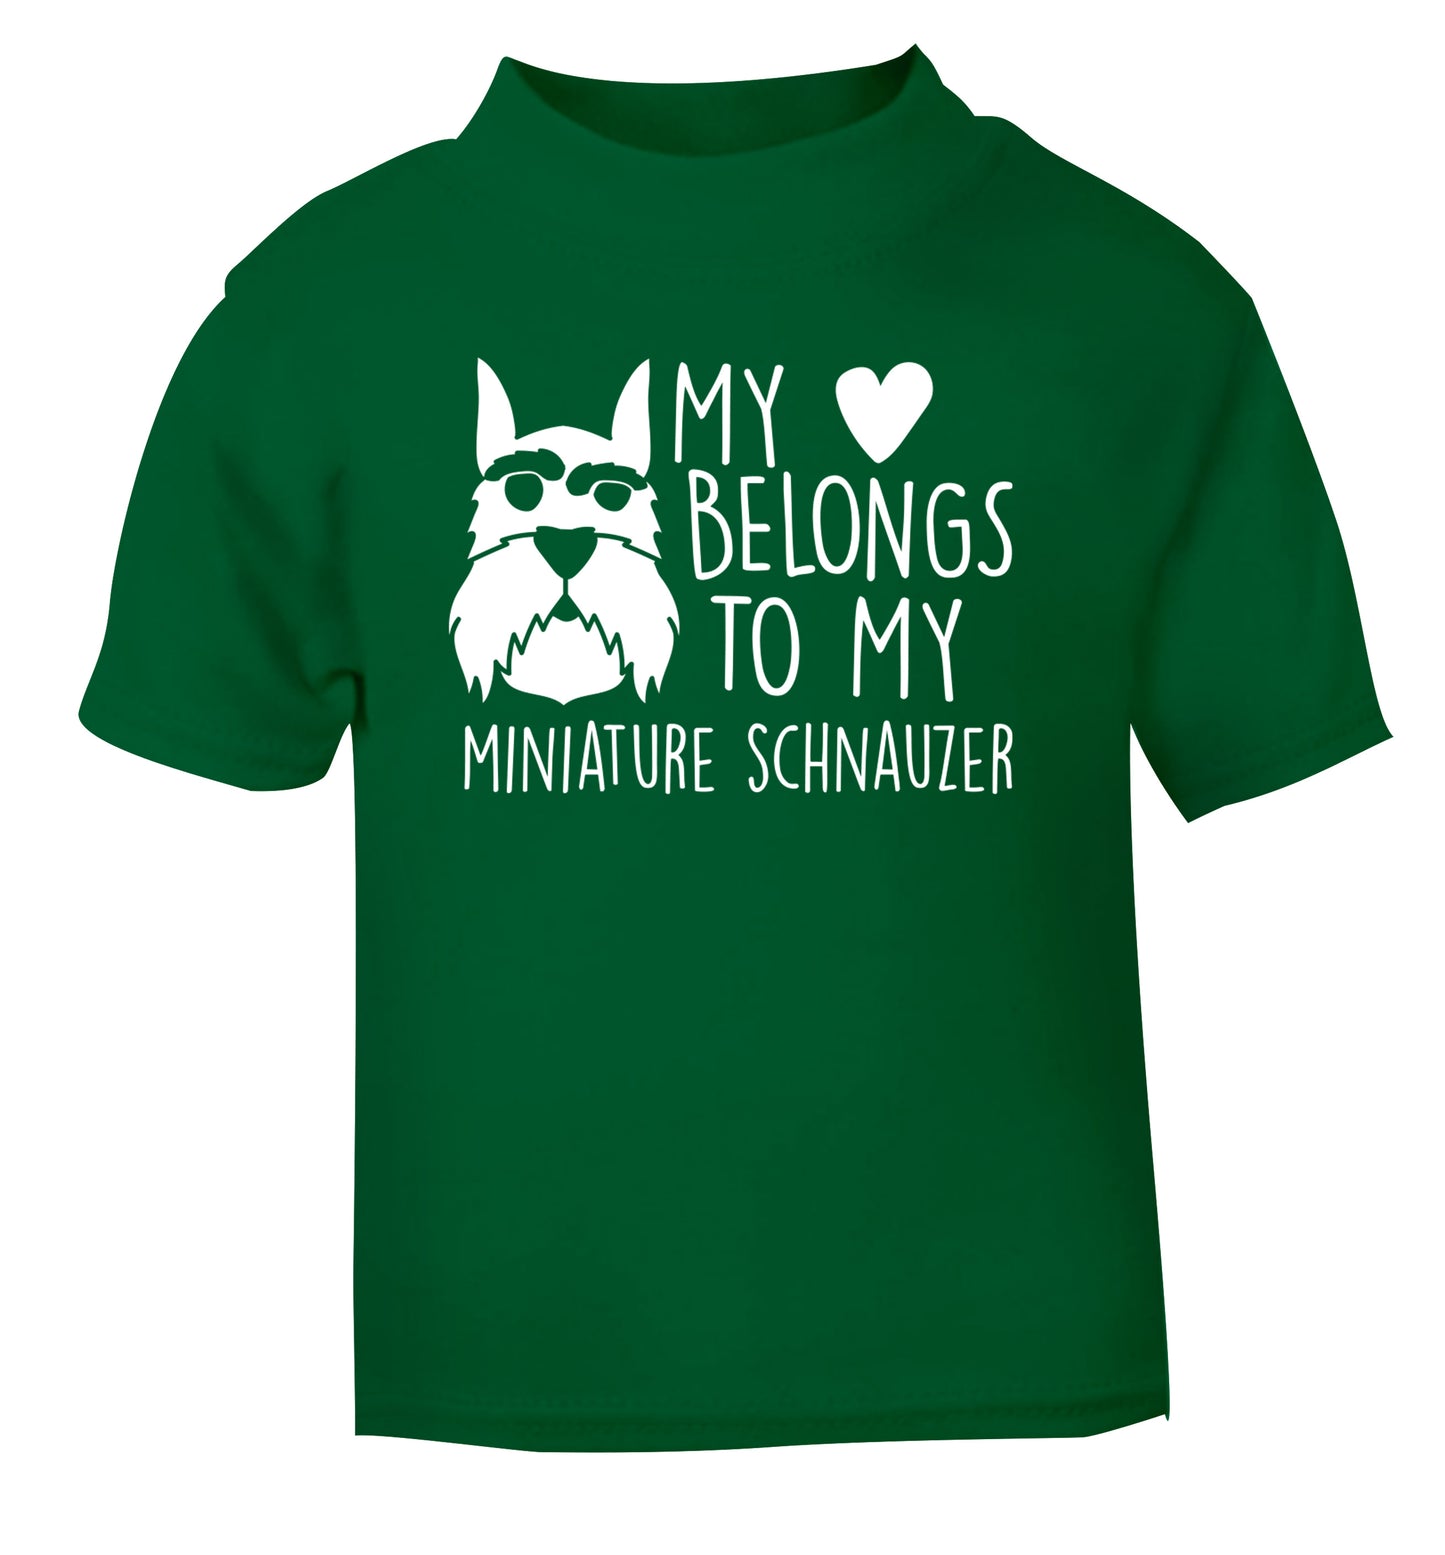 My heart belongs to my miniature schnauzer green Baby Toddler Tshirt 2 Years